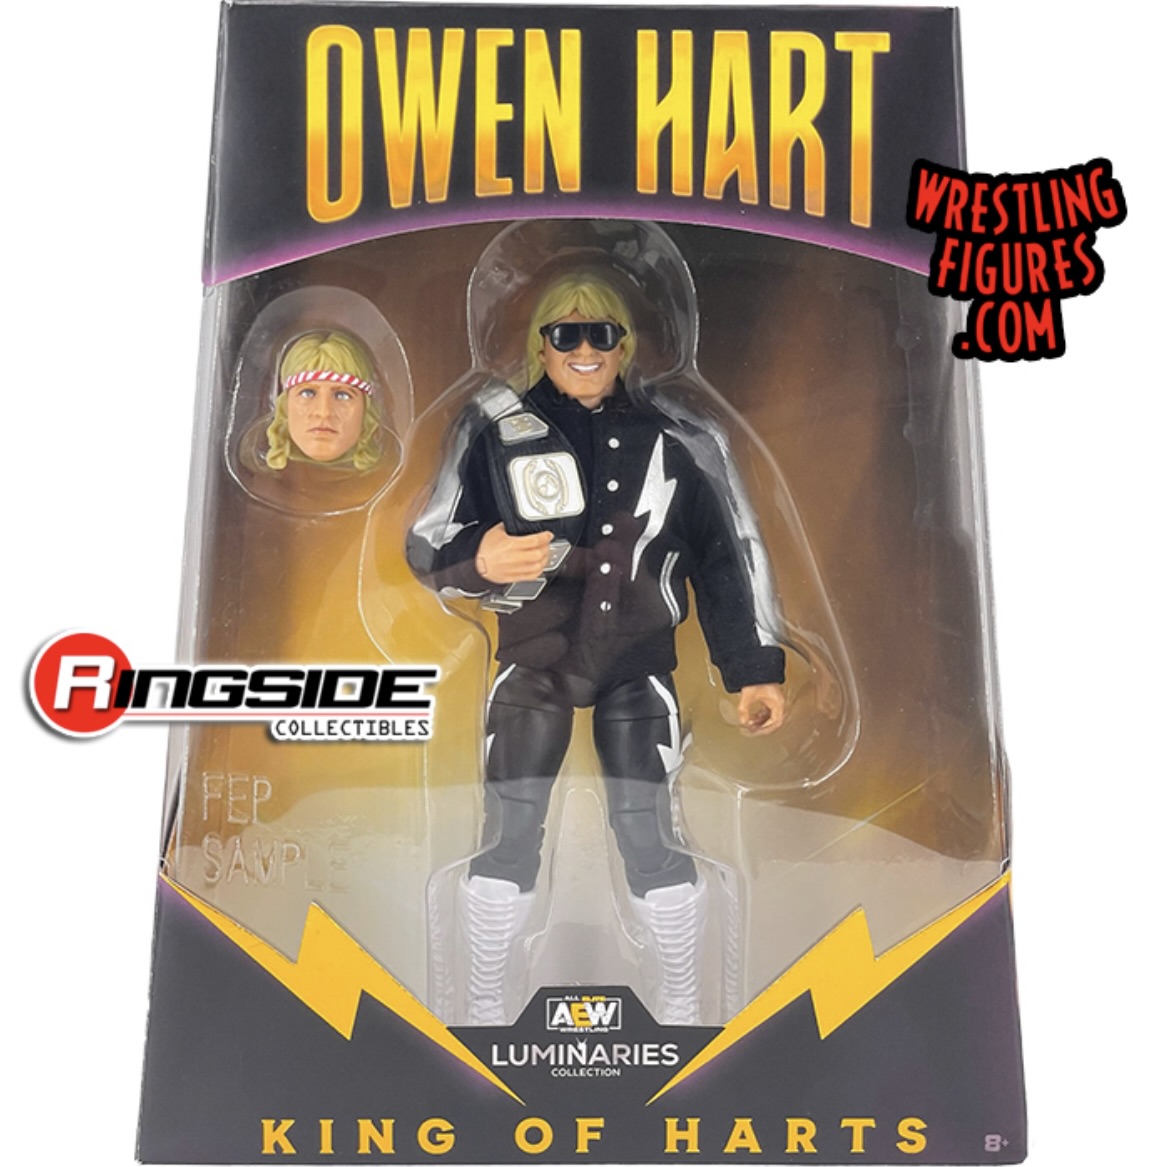 Aew Owen Hart